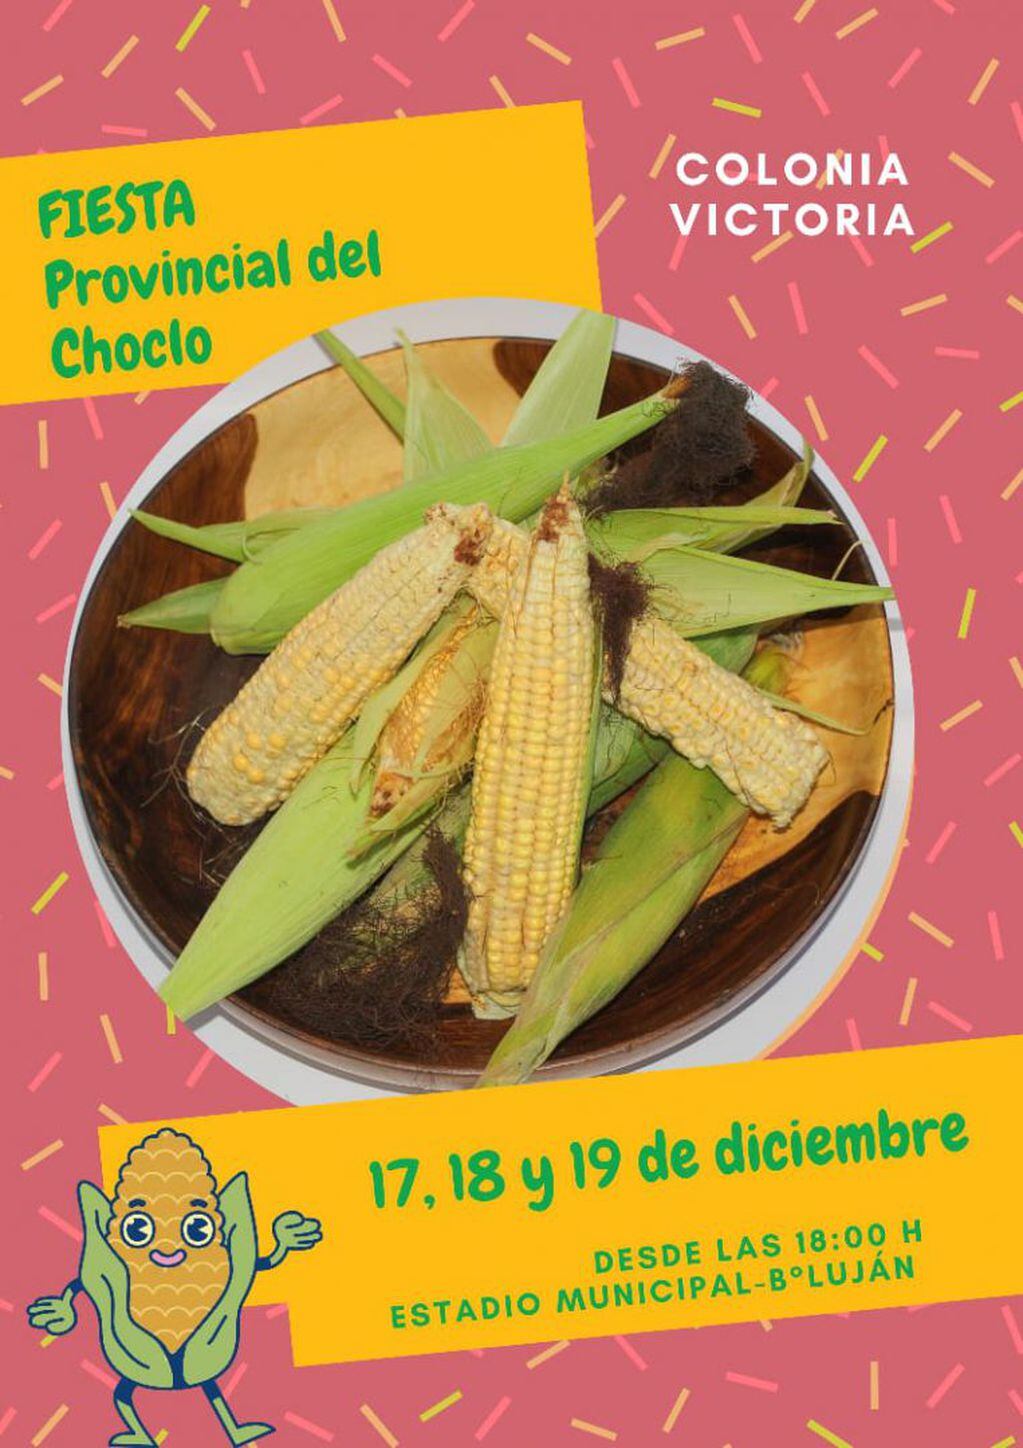 En Colonia Victoria se desarrollará la Primera Fiesta Provincial del Choclo.